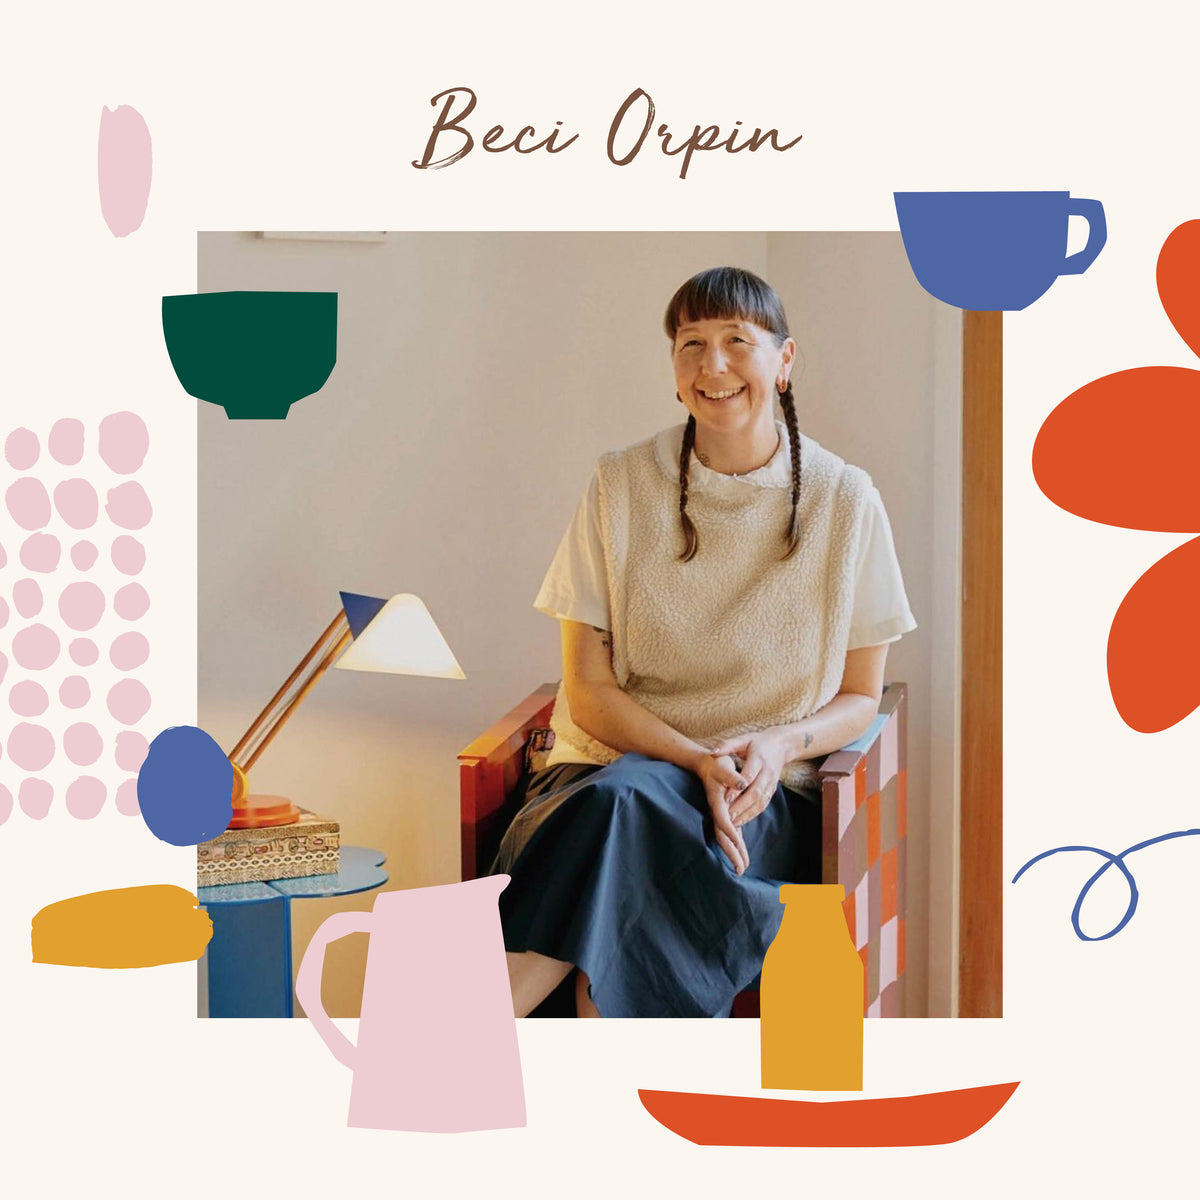 Beci Orpin / Artist Led Workshop